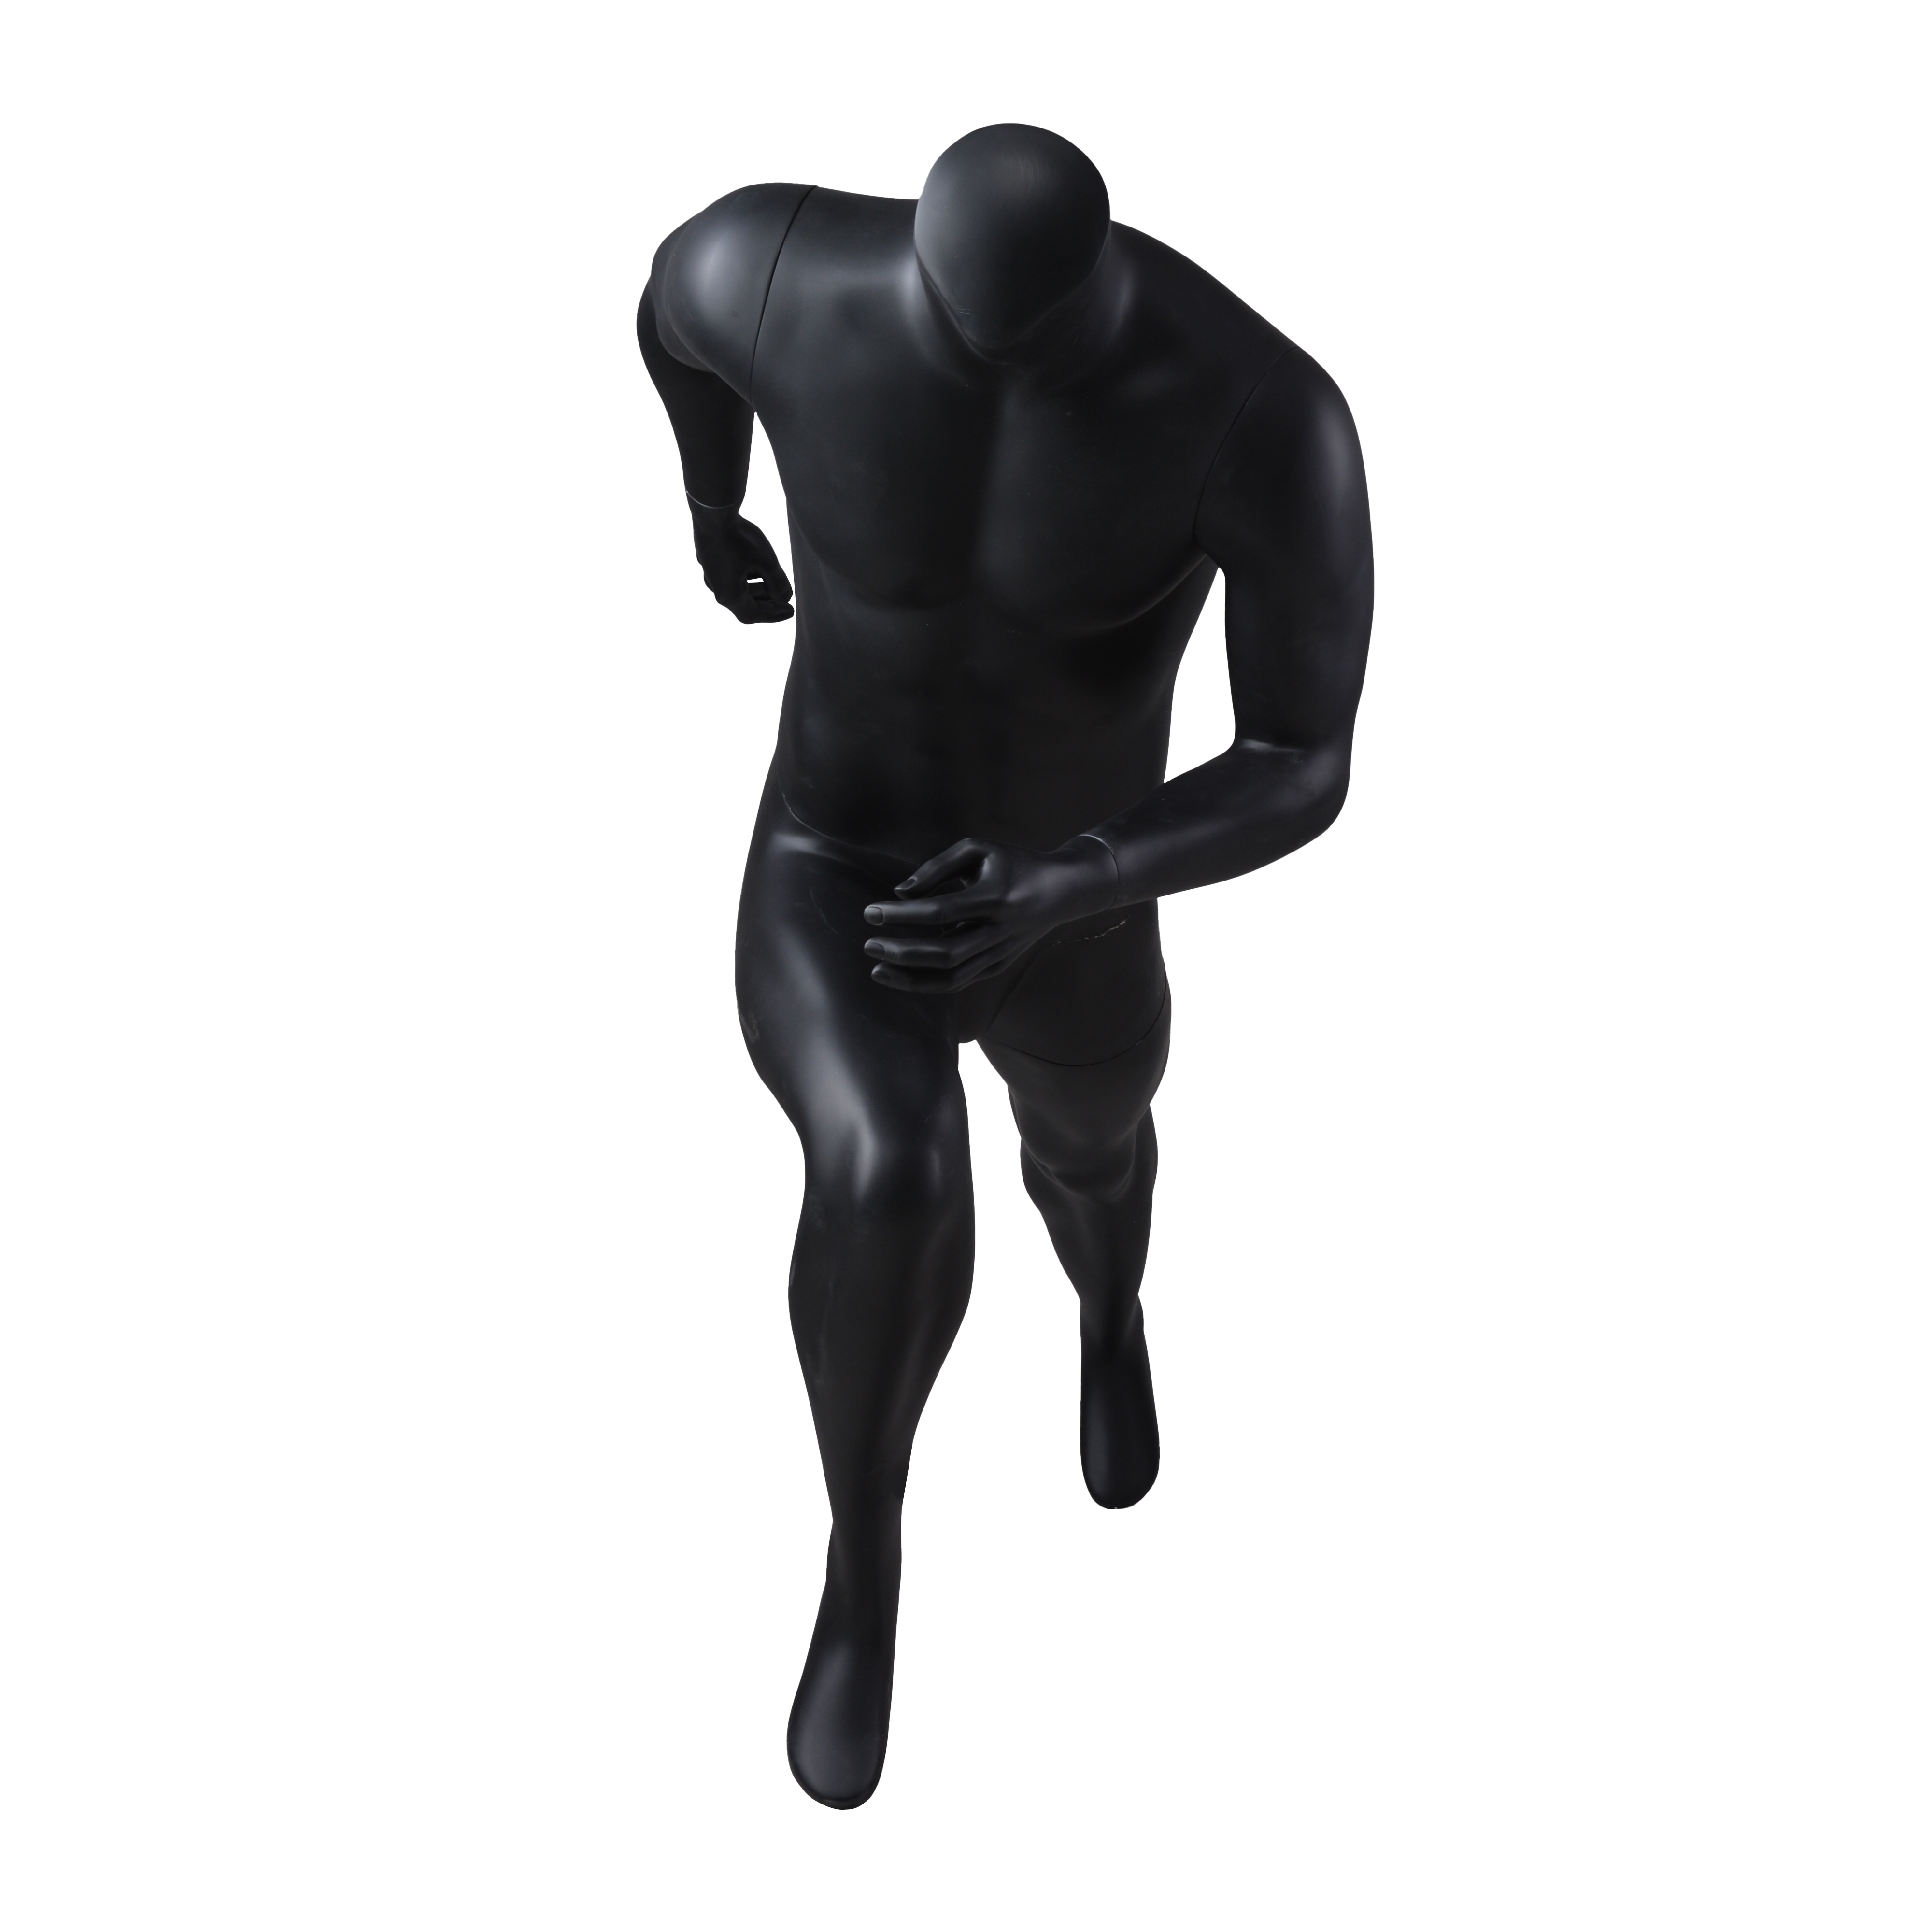 Black male sport mannequin for sale(LPM)